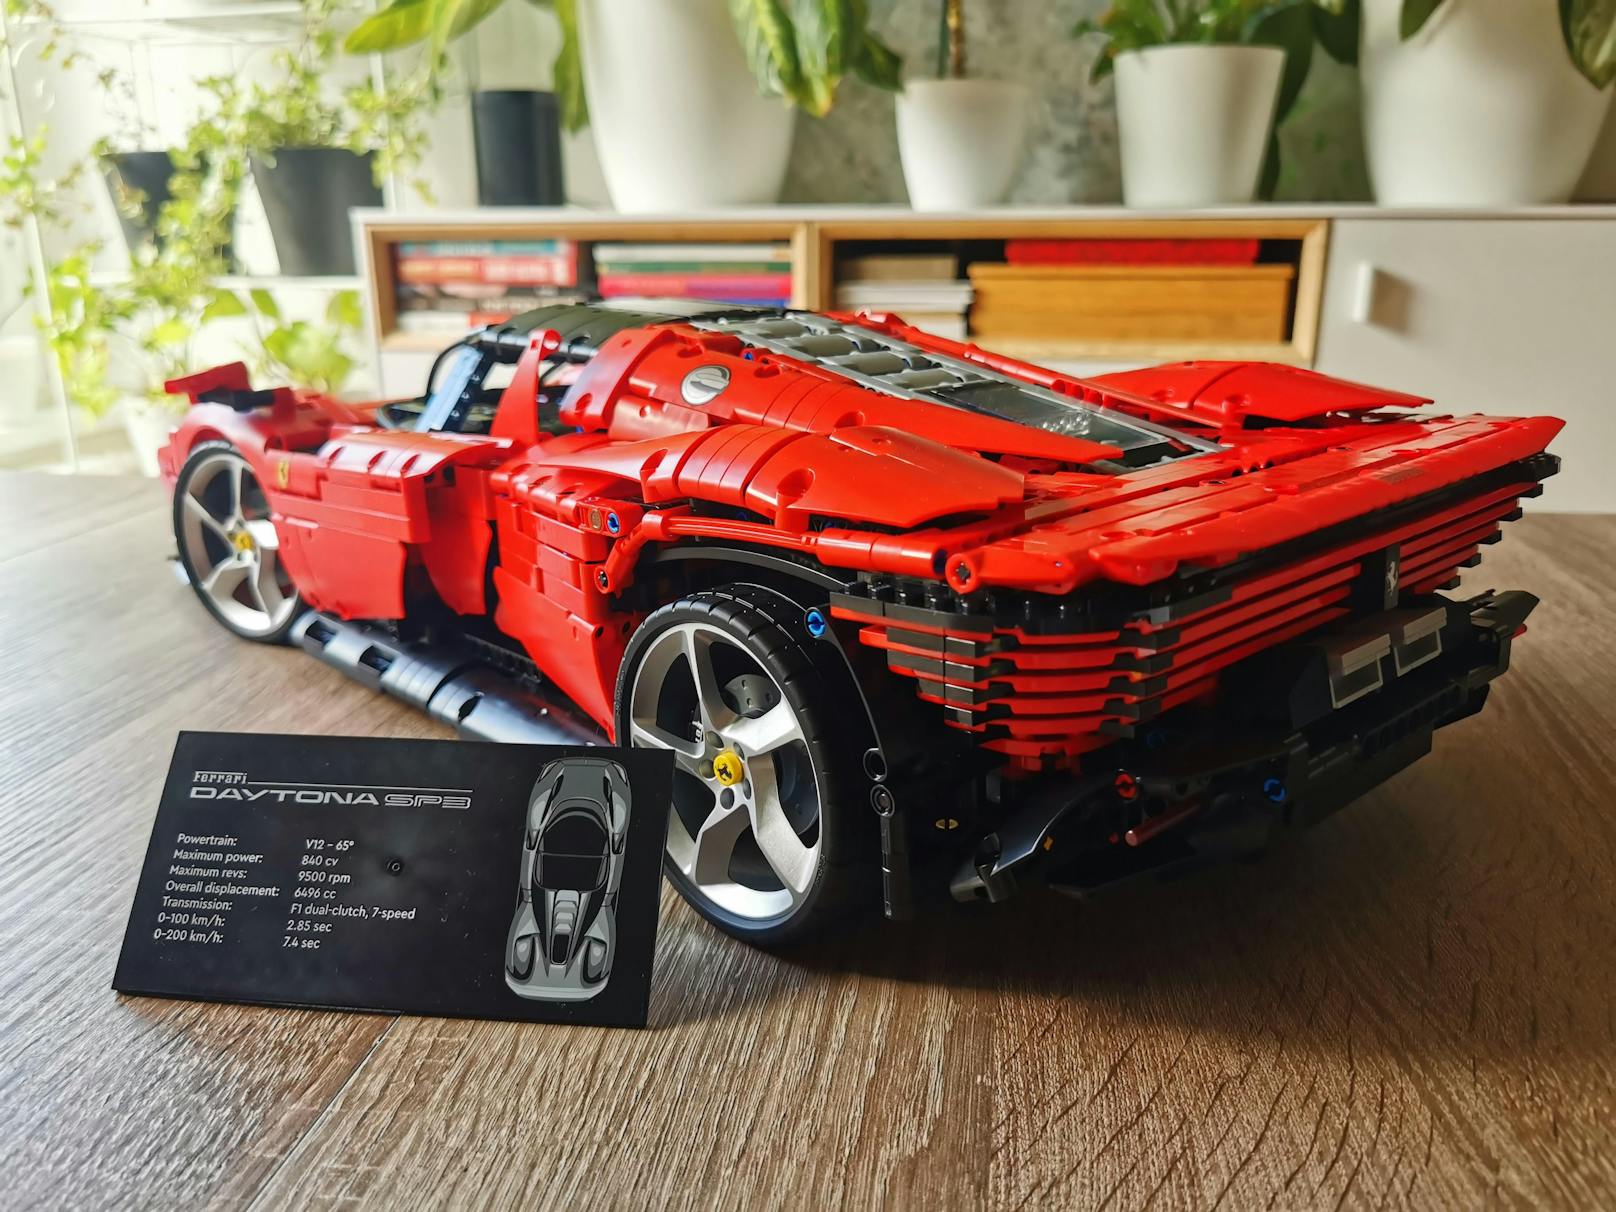 Um 400 Euro statt um zwei Millionen darf man sich nun den LEGO Ferrari Daytona SP3 ins Regal stellen.